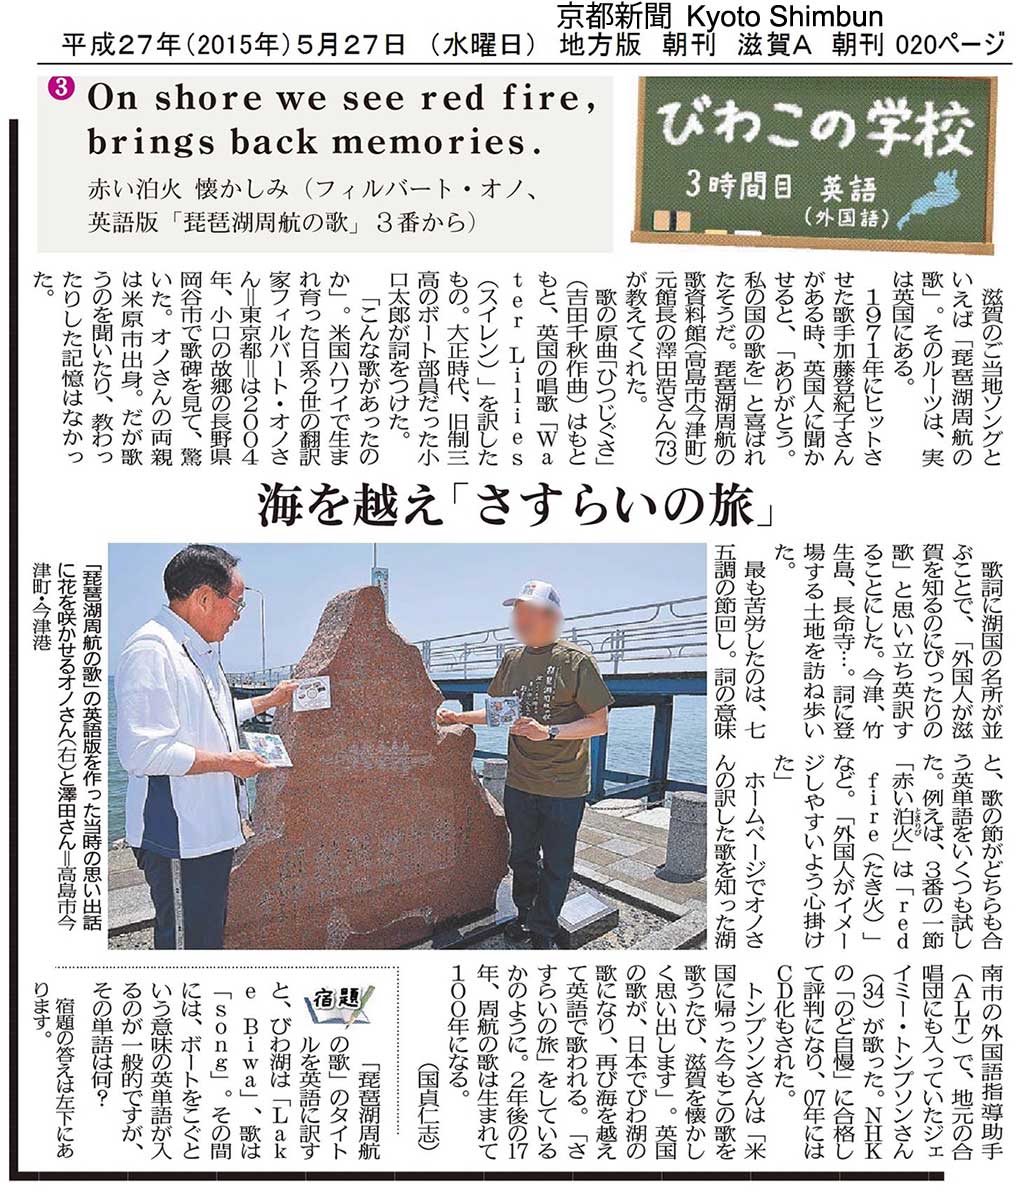 Kyoto Shimbun article mentioning the song's roots in the UK, May 27, 2015
Keywords: lake biwa rowing song newspaper